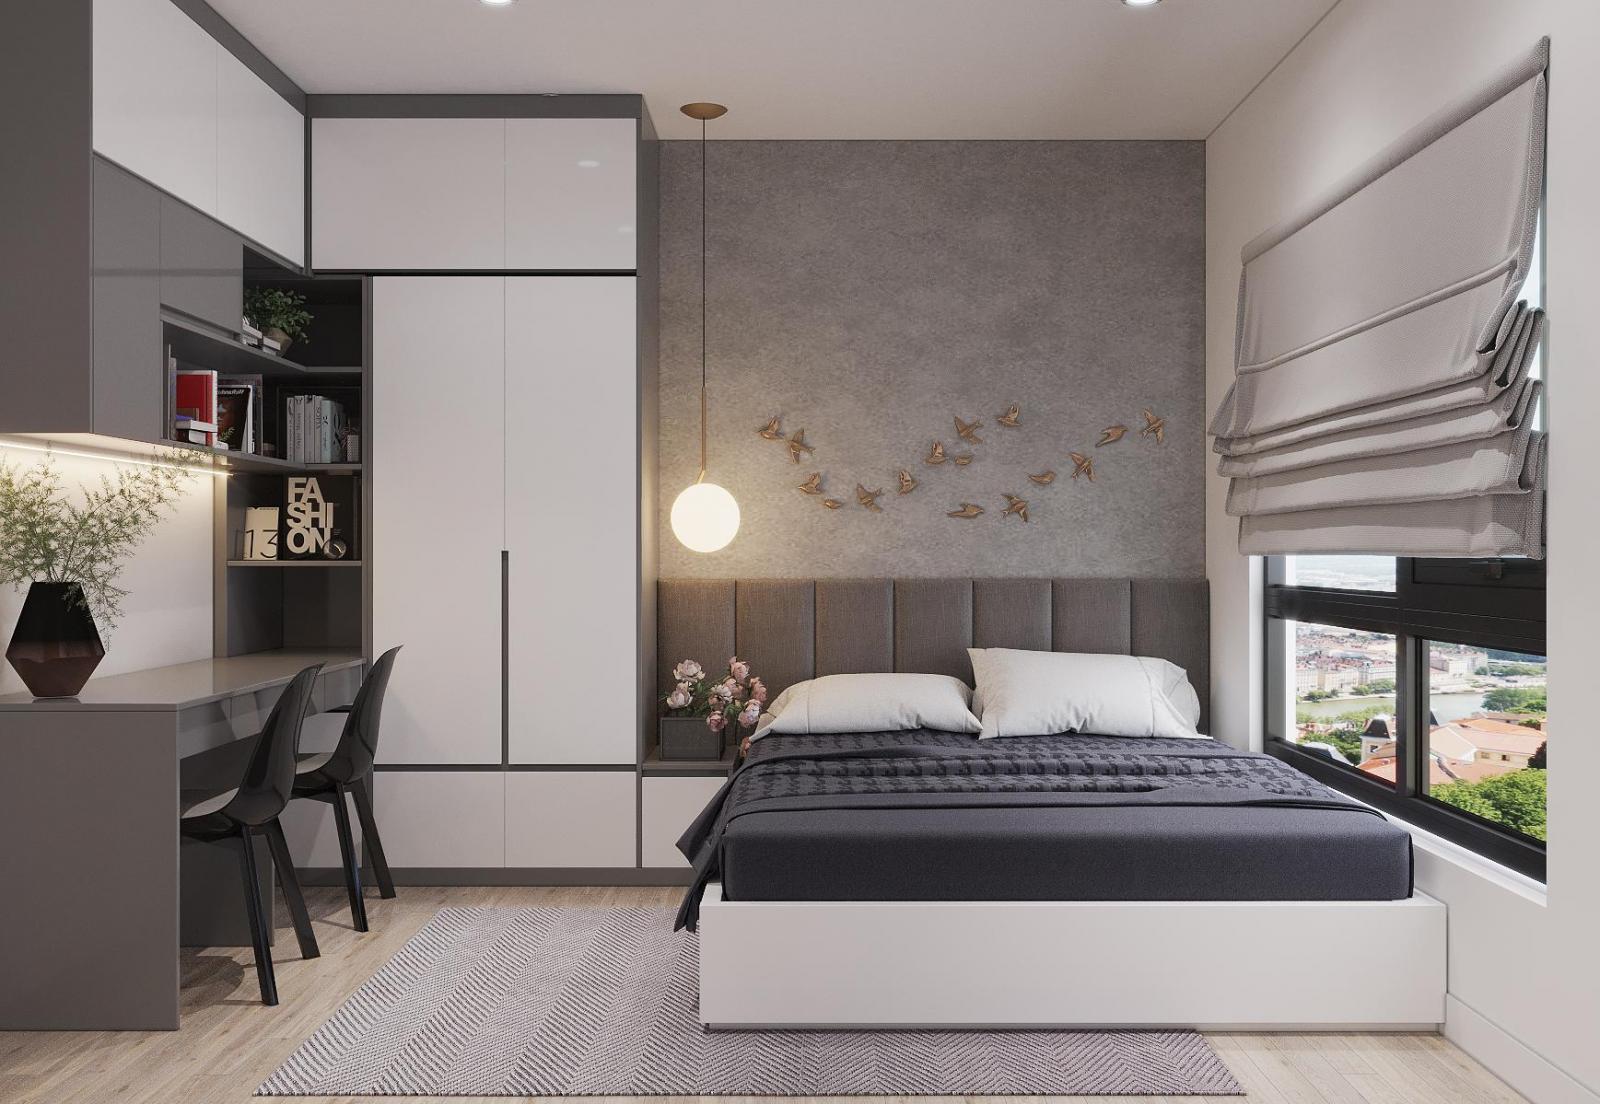 Phòng ngủ master được thiết kế với nội thất hiện đại, bảng màu trung tính sang trọng, hài hòa. Nhờ bố trí khéo léo, căn phòng đủ chỗ cho góc làm việc đôi tiện dụng.